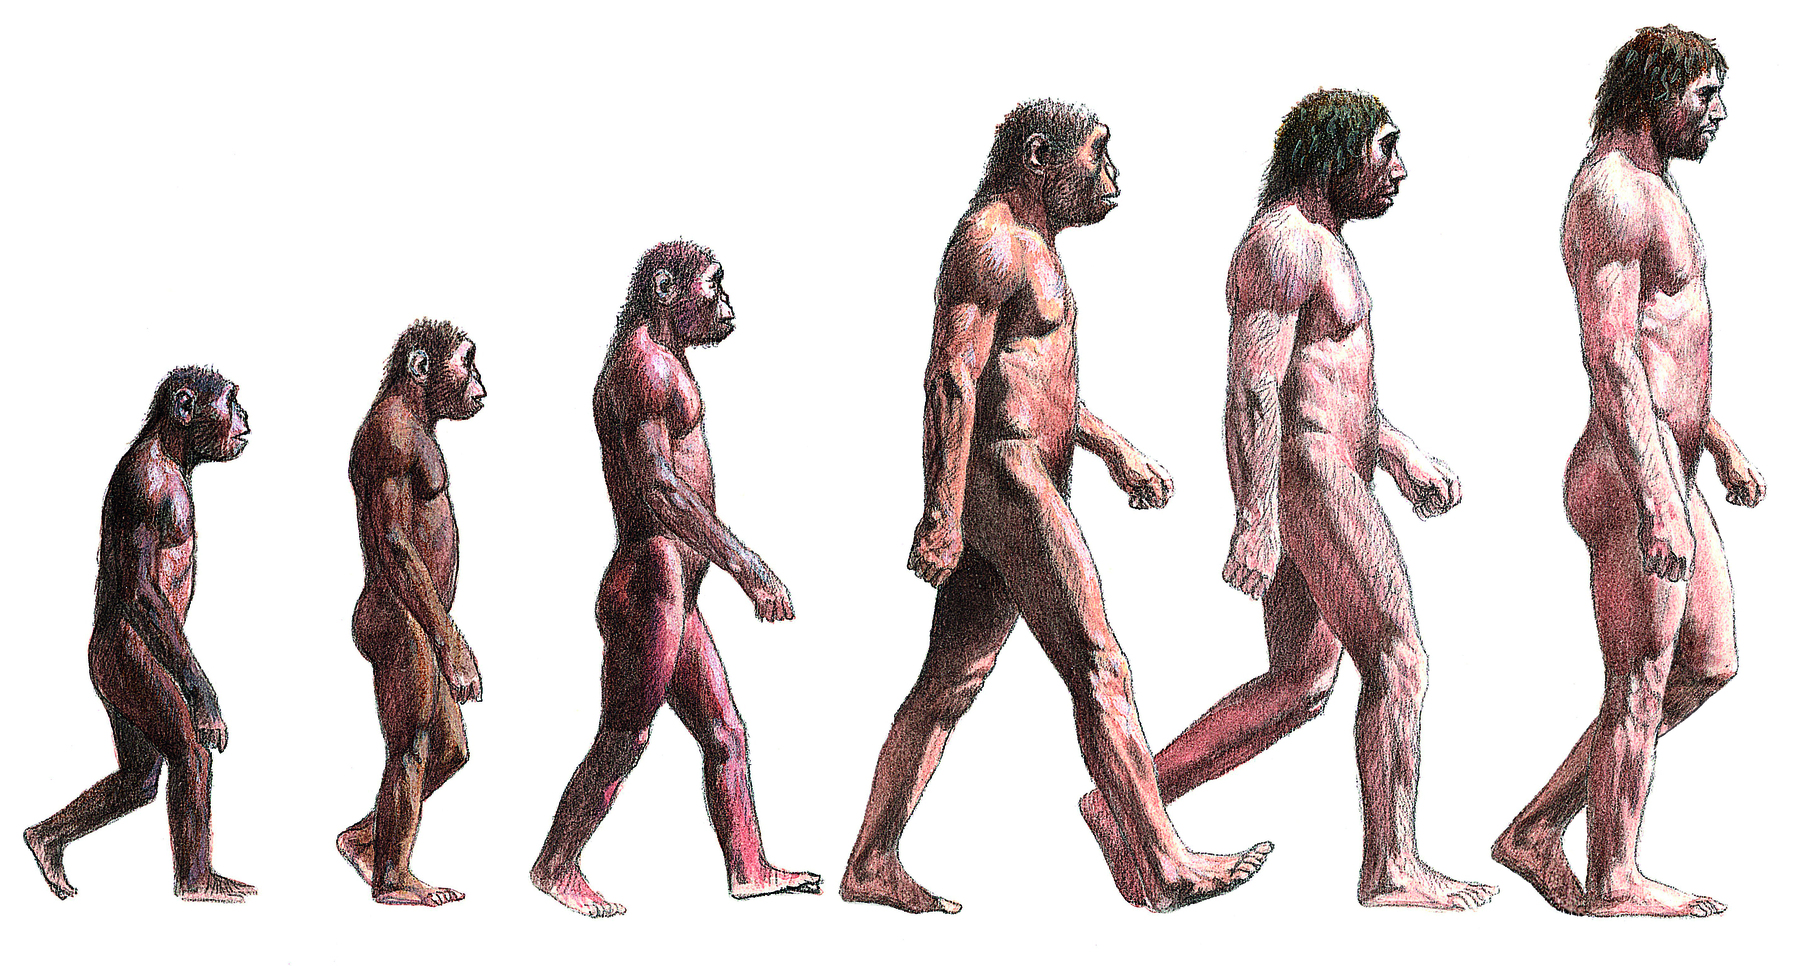 Ilustração. Evolução do Homo sapiens em seis fases. Da esquerda para a direita: uma criatura baixa, peluda, ligeiramente encurvada e com rosto semelhante ao chimpanzé; ser com feições semelhantes ao anterior, porém um pouco mais alto; ser semelhante ao anterior, um pouco mais alto, com menos pelos; ser mais alto que o anterior, com menos pelos e com postura mais ereta; ser com altura semelhante ao anterior, feições mais próximas as do ser humano e com menos pelos; ser humano, mais alto que o ser anterior, com menos pelos e com a coluna mais ereta.